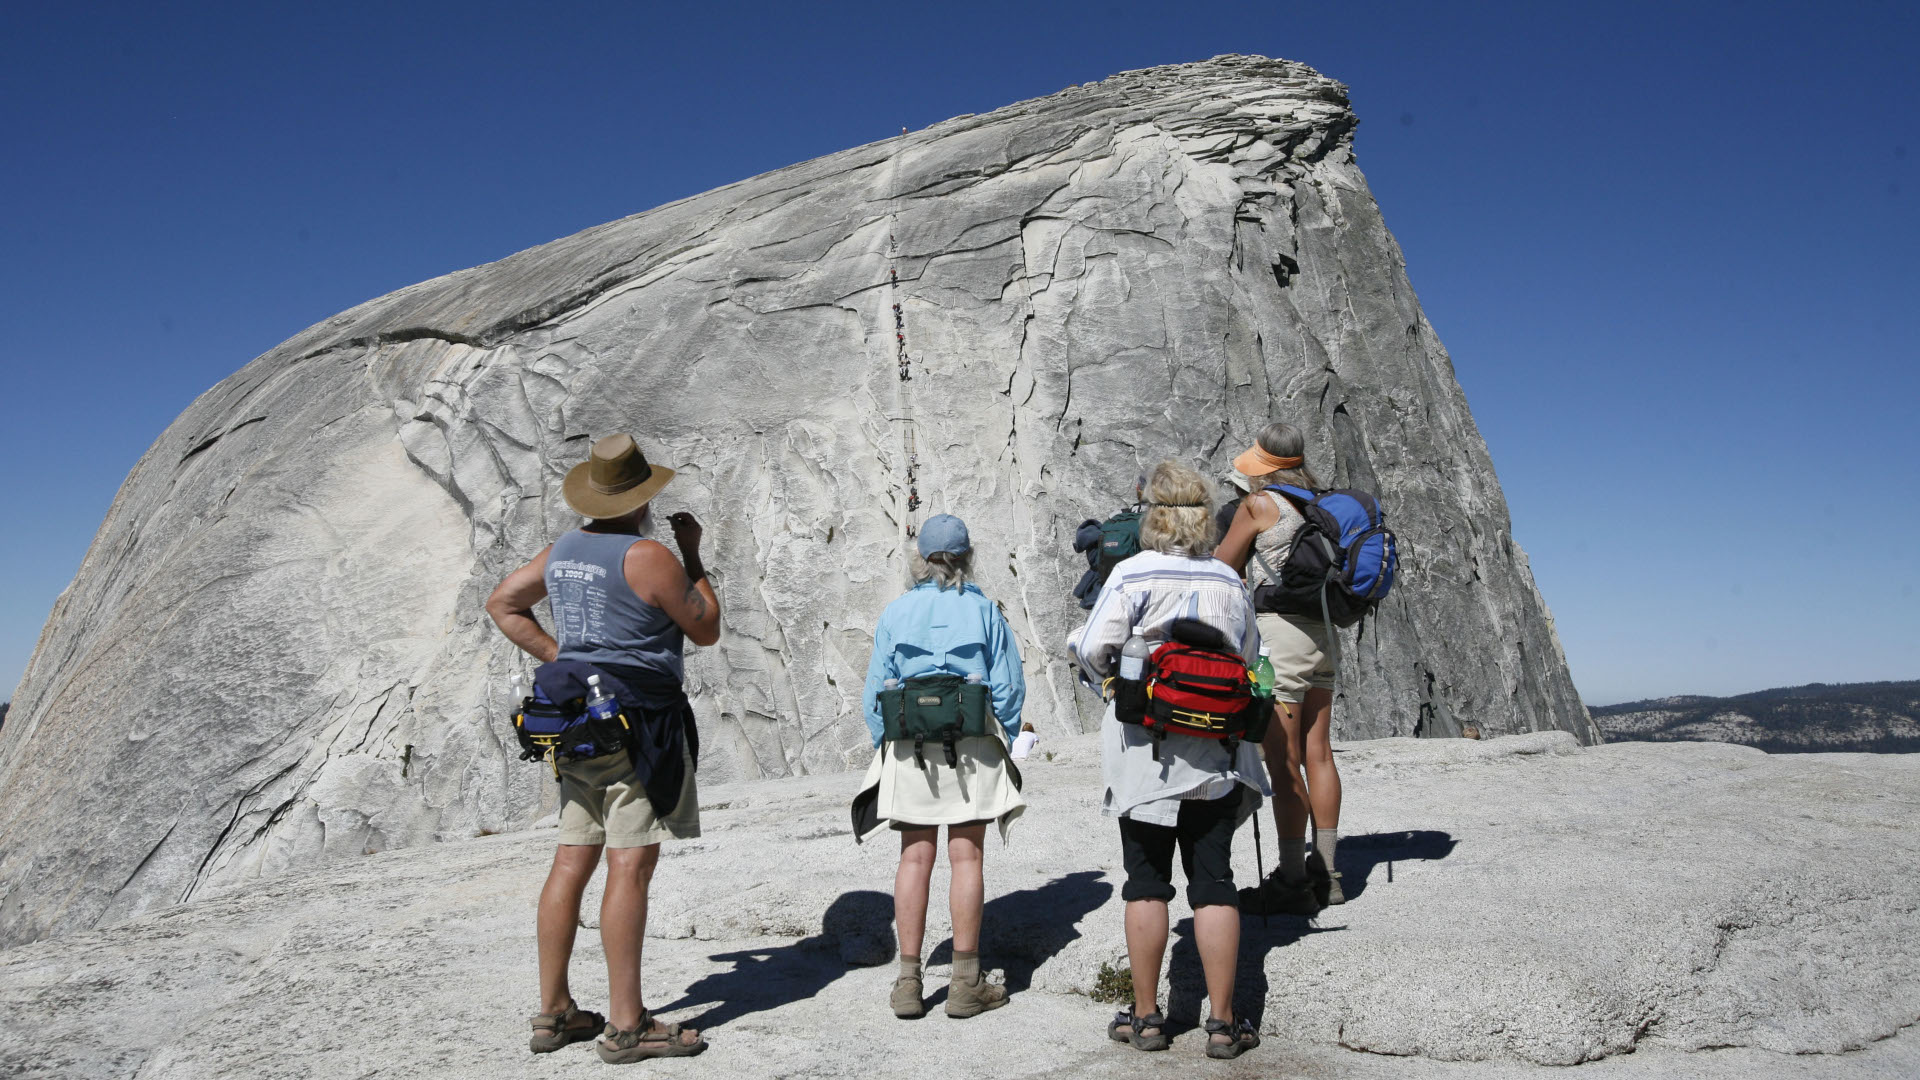 Temprano en la mañana, antes de que llegara la multitud, un grupo de excursionistas observa la sección del cable Half Dome en el Parque Nacional Yosemite.